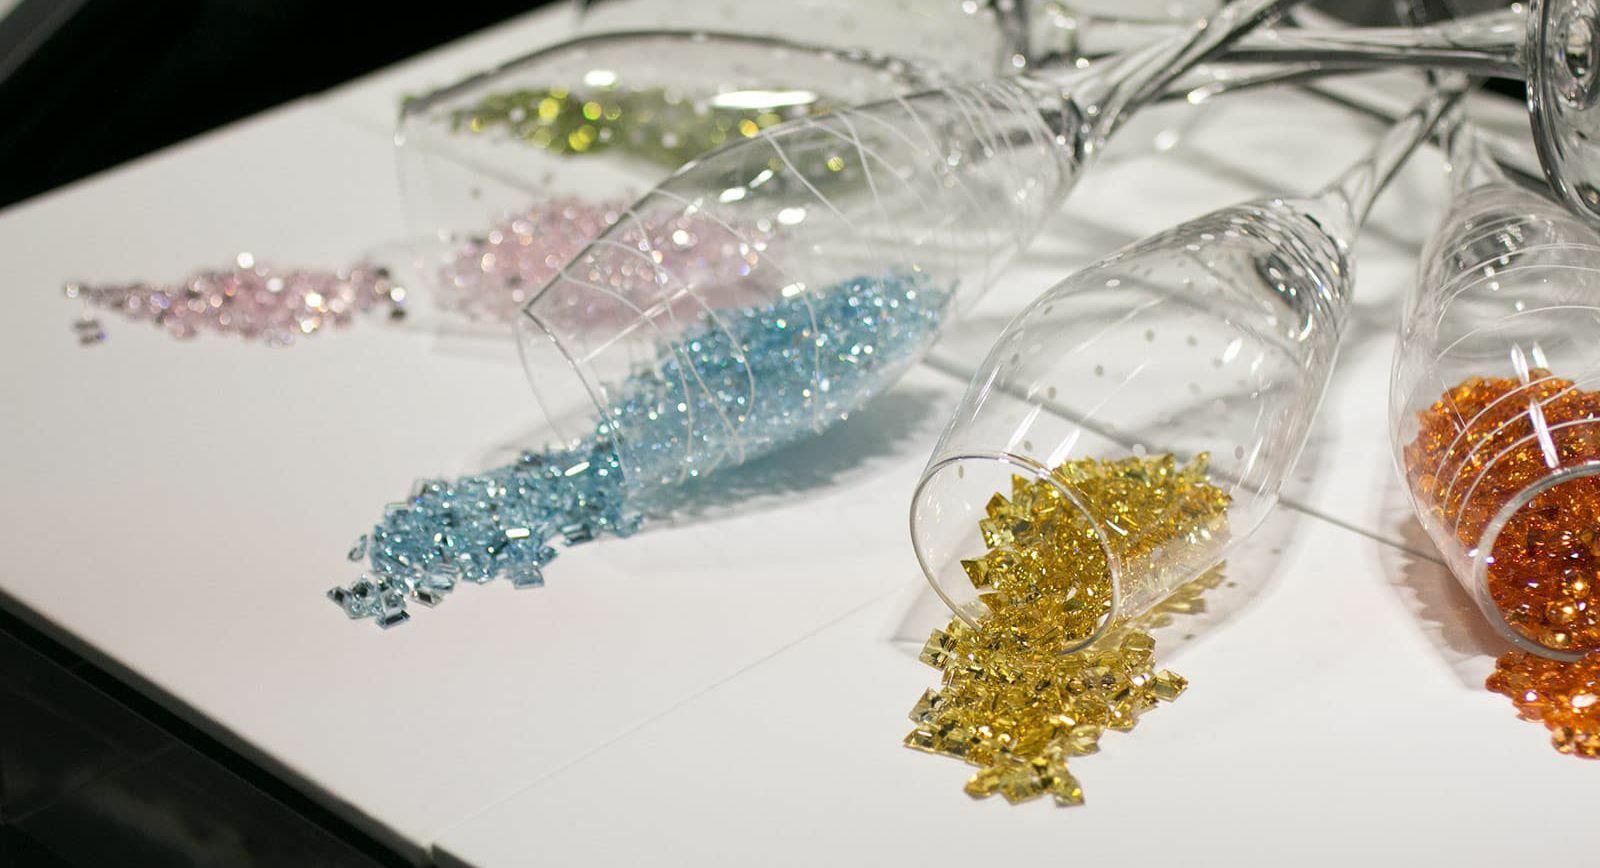 Gemstones at Inhorgenta 2020 exhibition in Munich